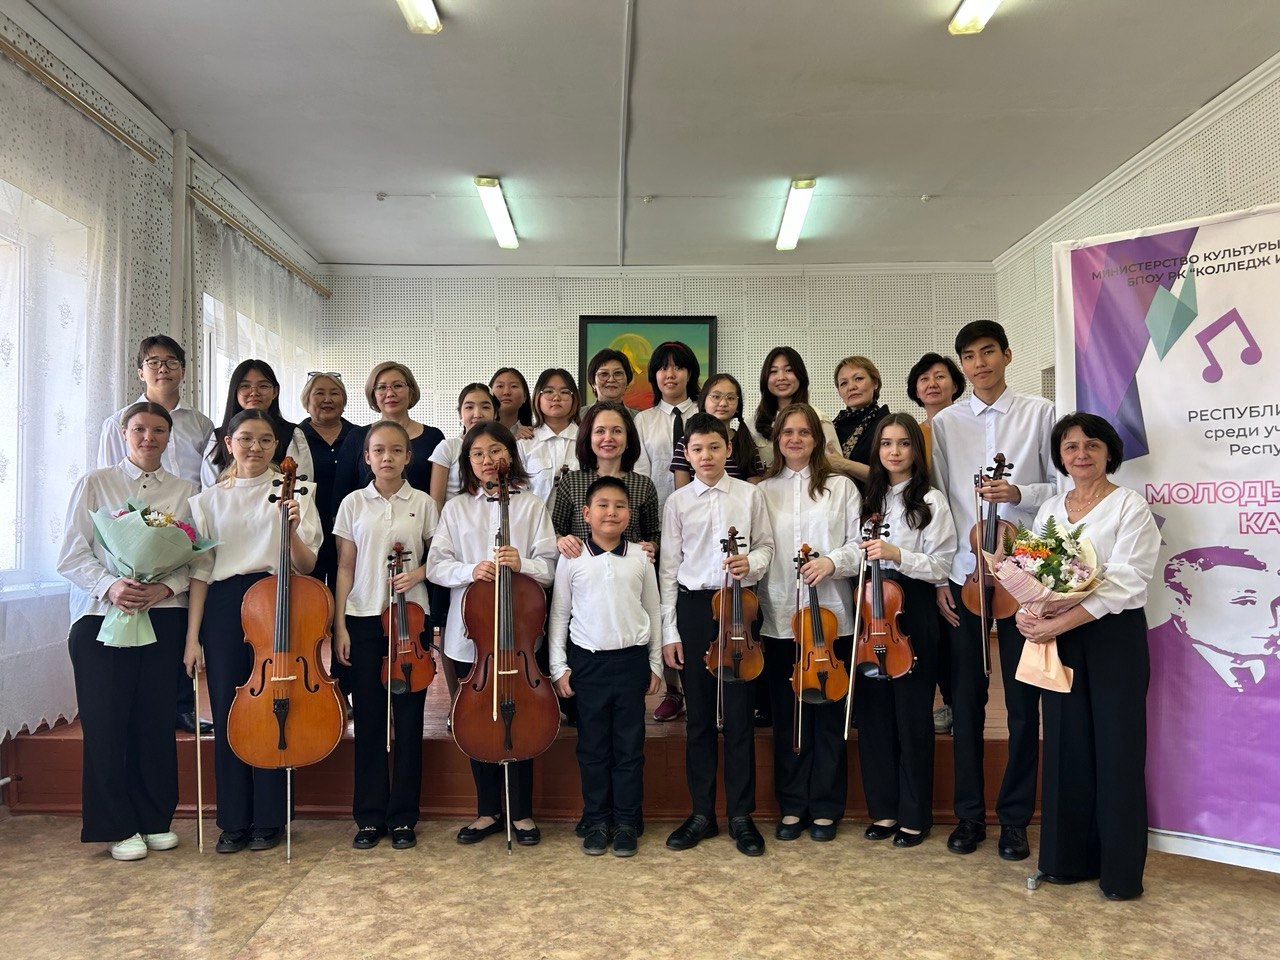 Сегодня учащиеся оркестрового отделения (струнные инструменты) выступили на Республиканском конкурсе "Молодые дарования Калмыкии". 